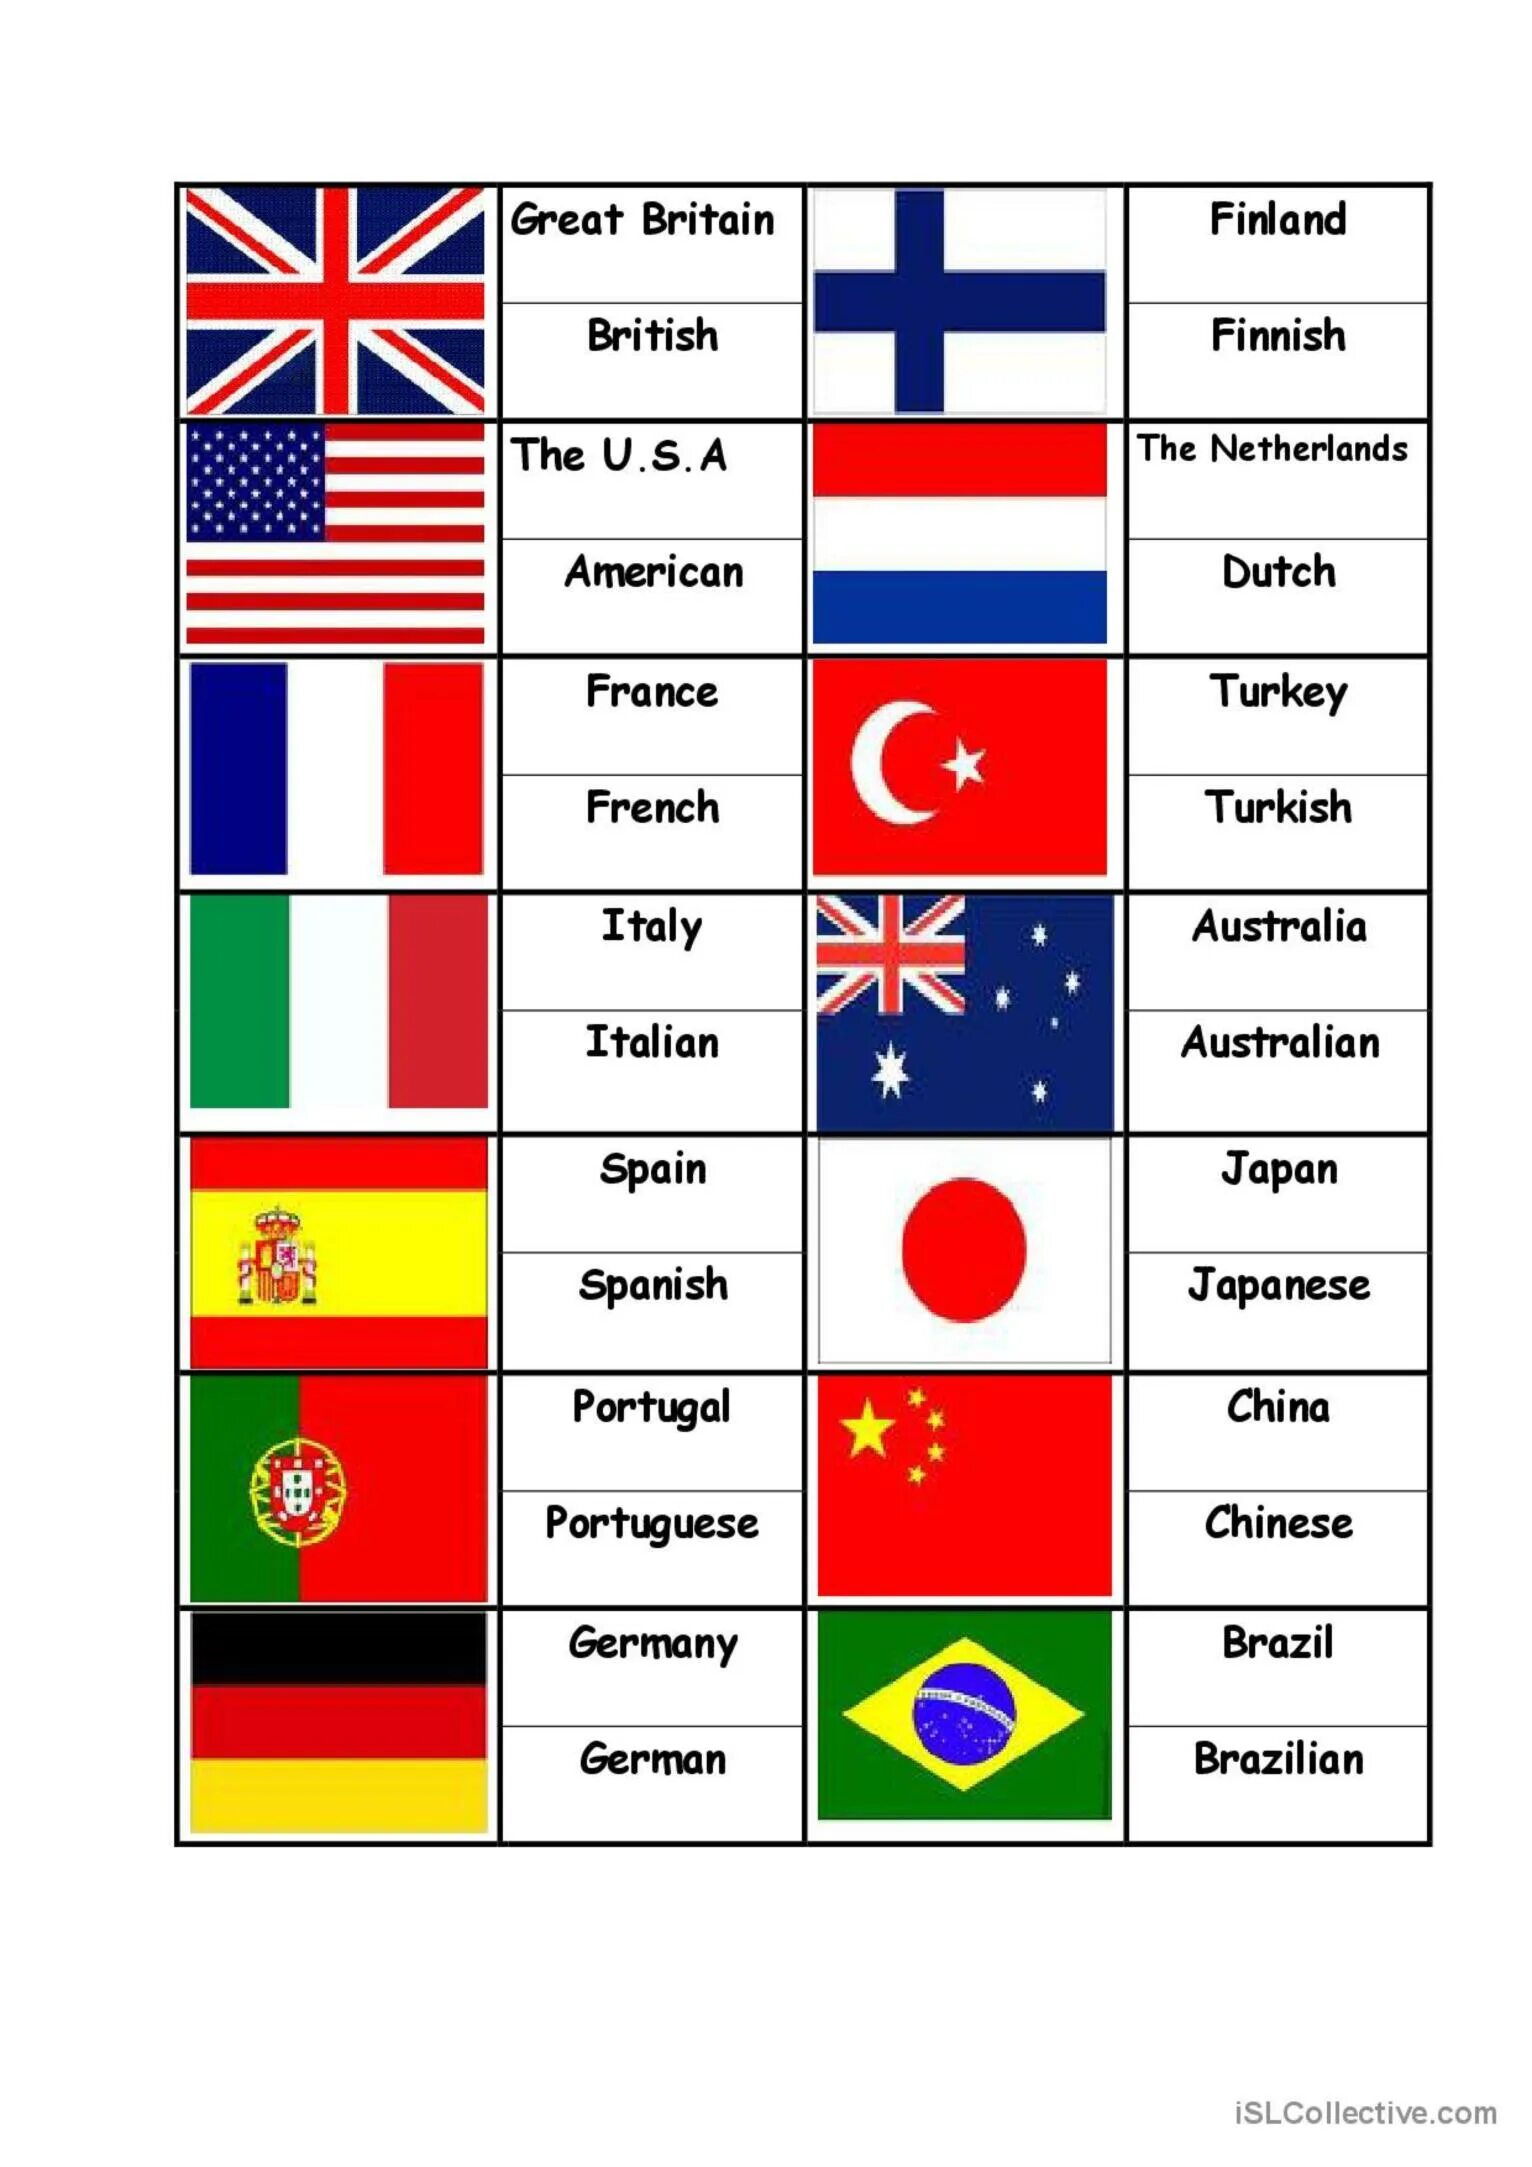 Название стран на английском языке. Страны на английском. Страны на английском языке и флаги. Флаги стран с названиями на английском языке. Страны и национальности.